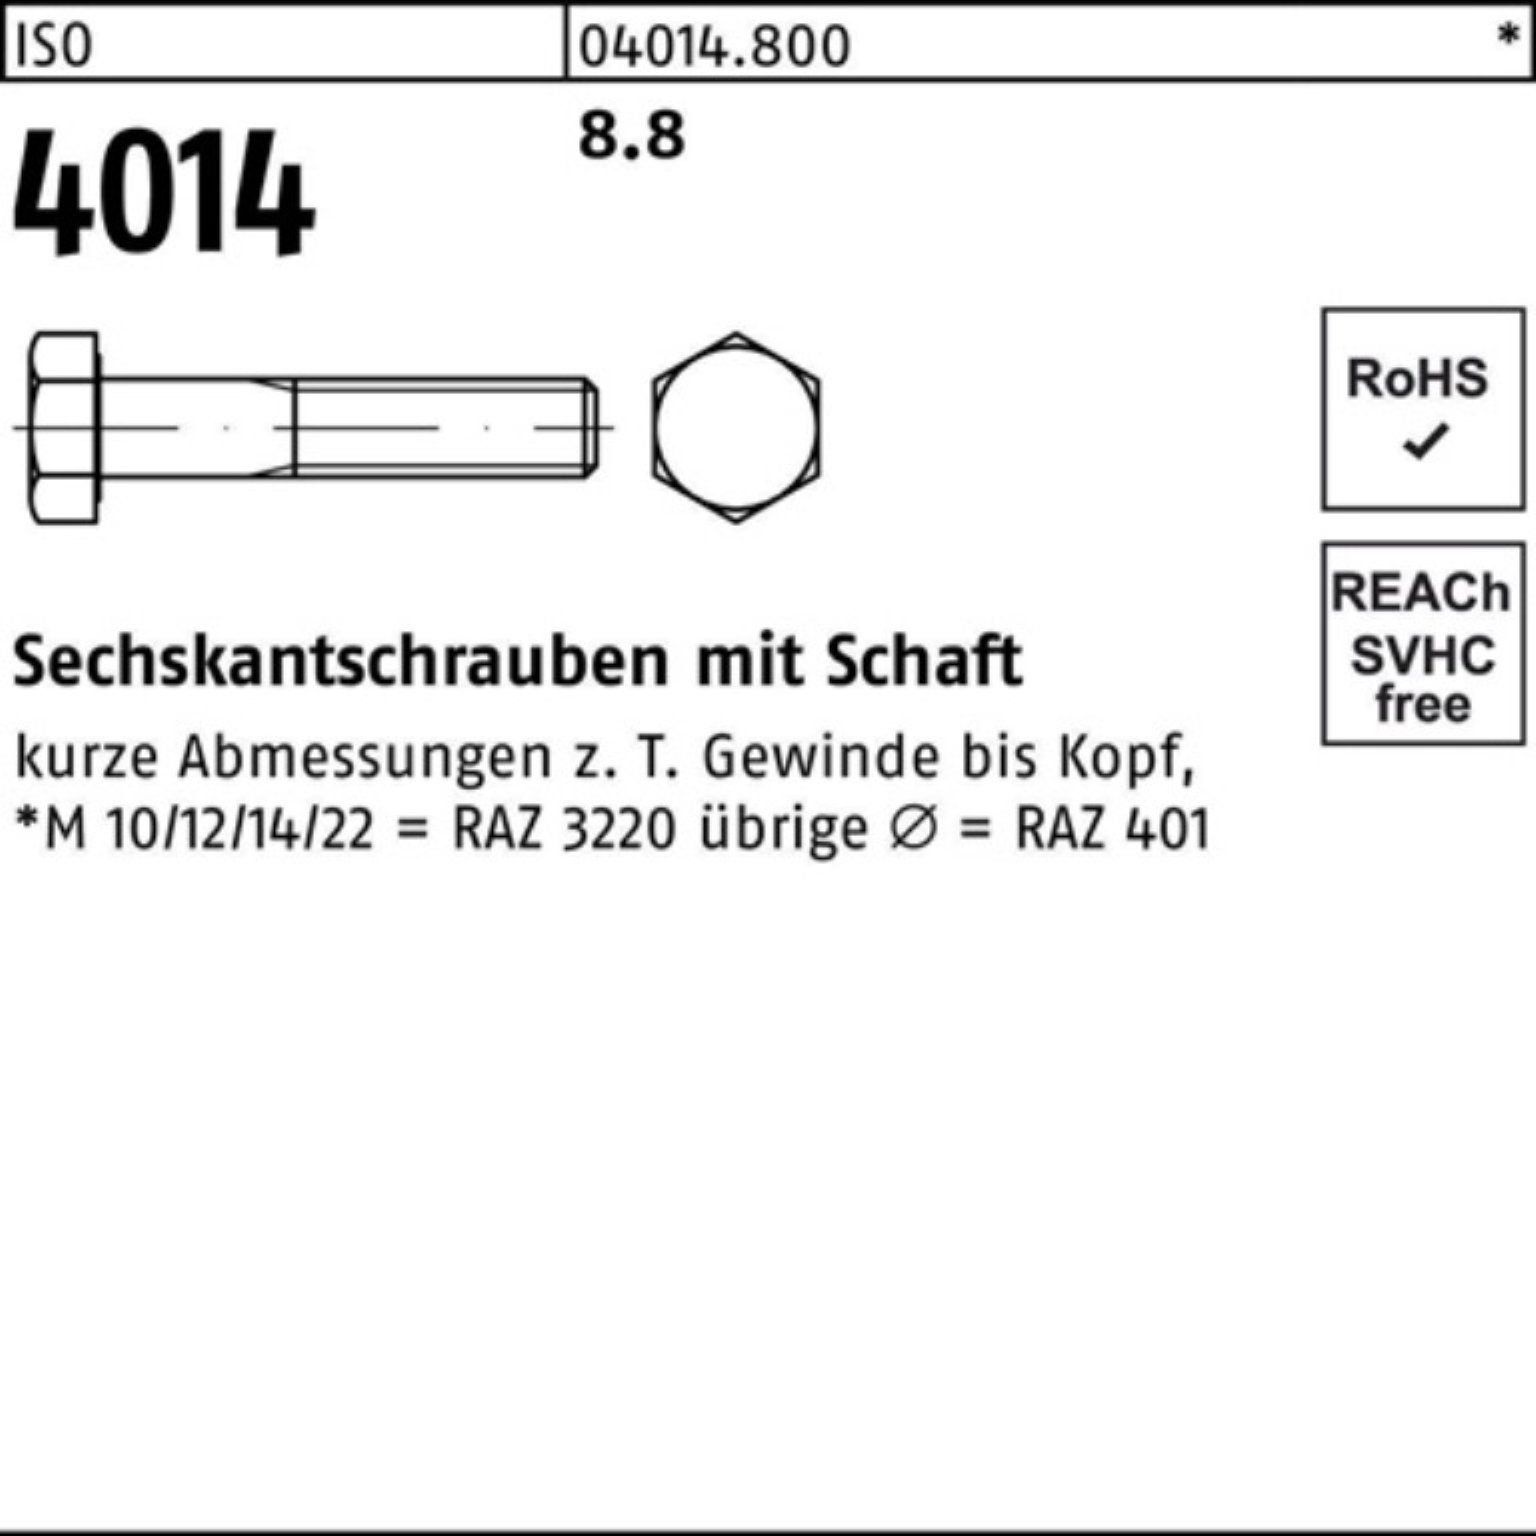 Bufab Sechskantschraube 100er Pack Sechskantschraube M8x 150 4014 8.8 IS Stück ISO 100 Schaft